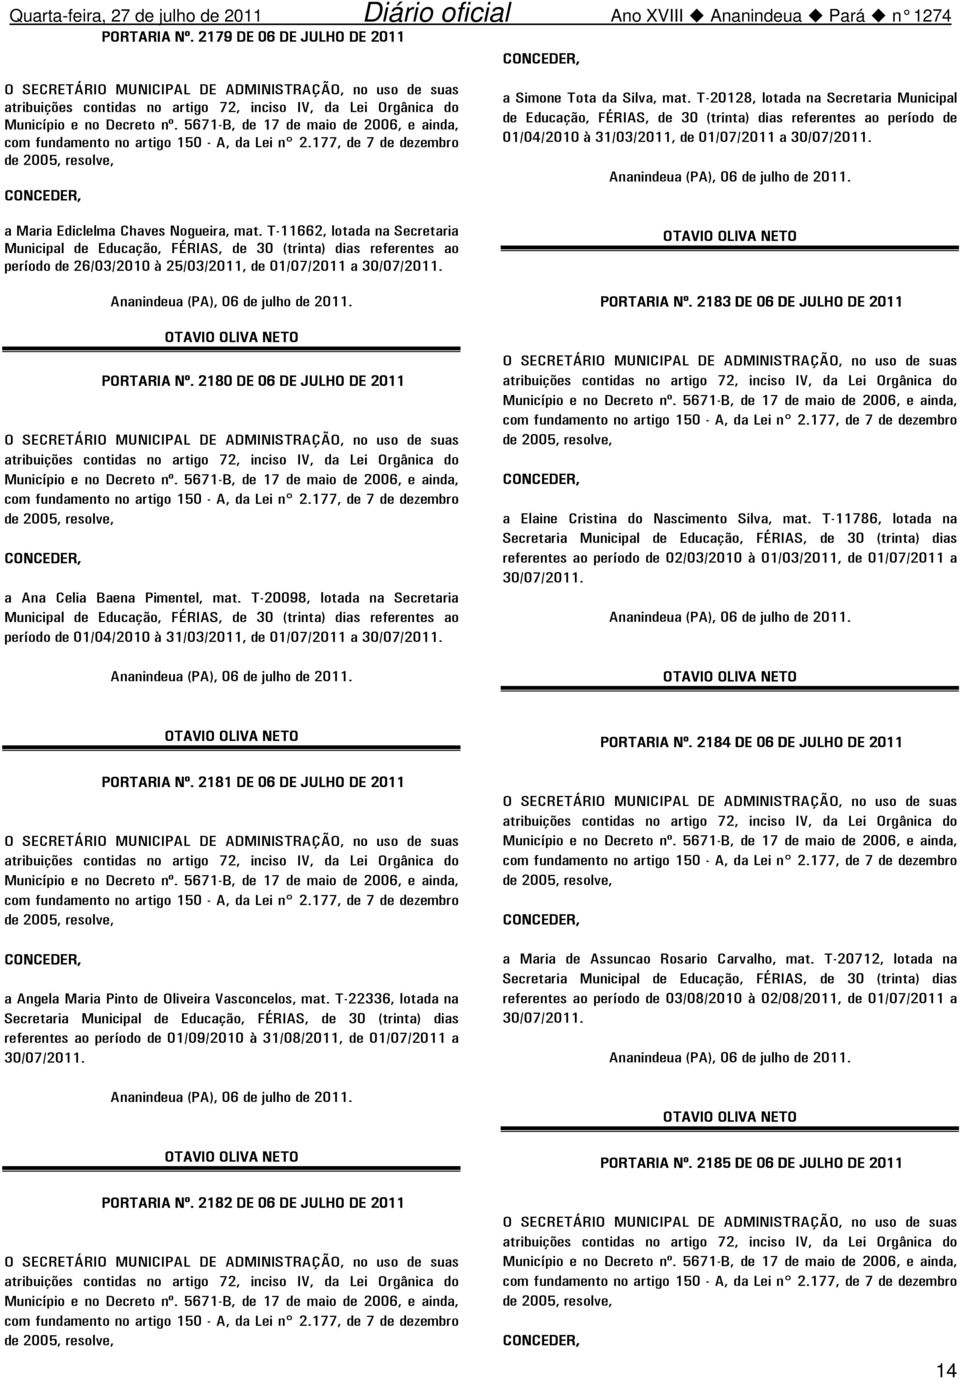 T-20128, lotada na Secretaria Municipal de Educação, FÉRIAS, de 30 (trinta) dias referentes ao período de 01/04/2010 à 31/03/2011, de 01/07/2011 a 30/07/2011. PORTARIA Nº.